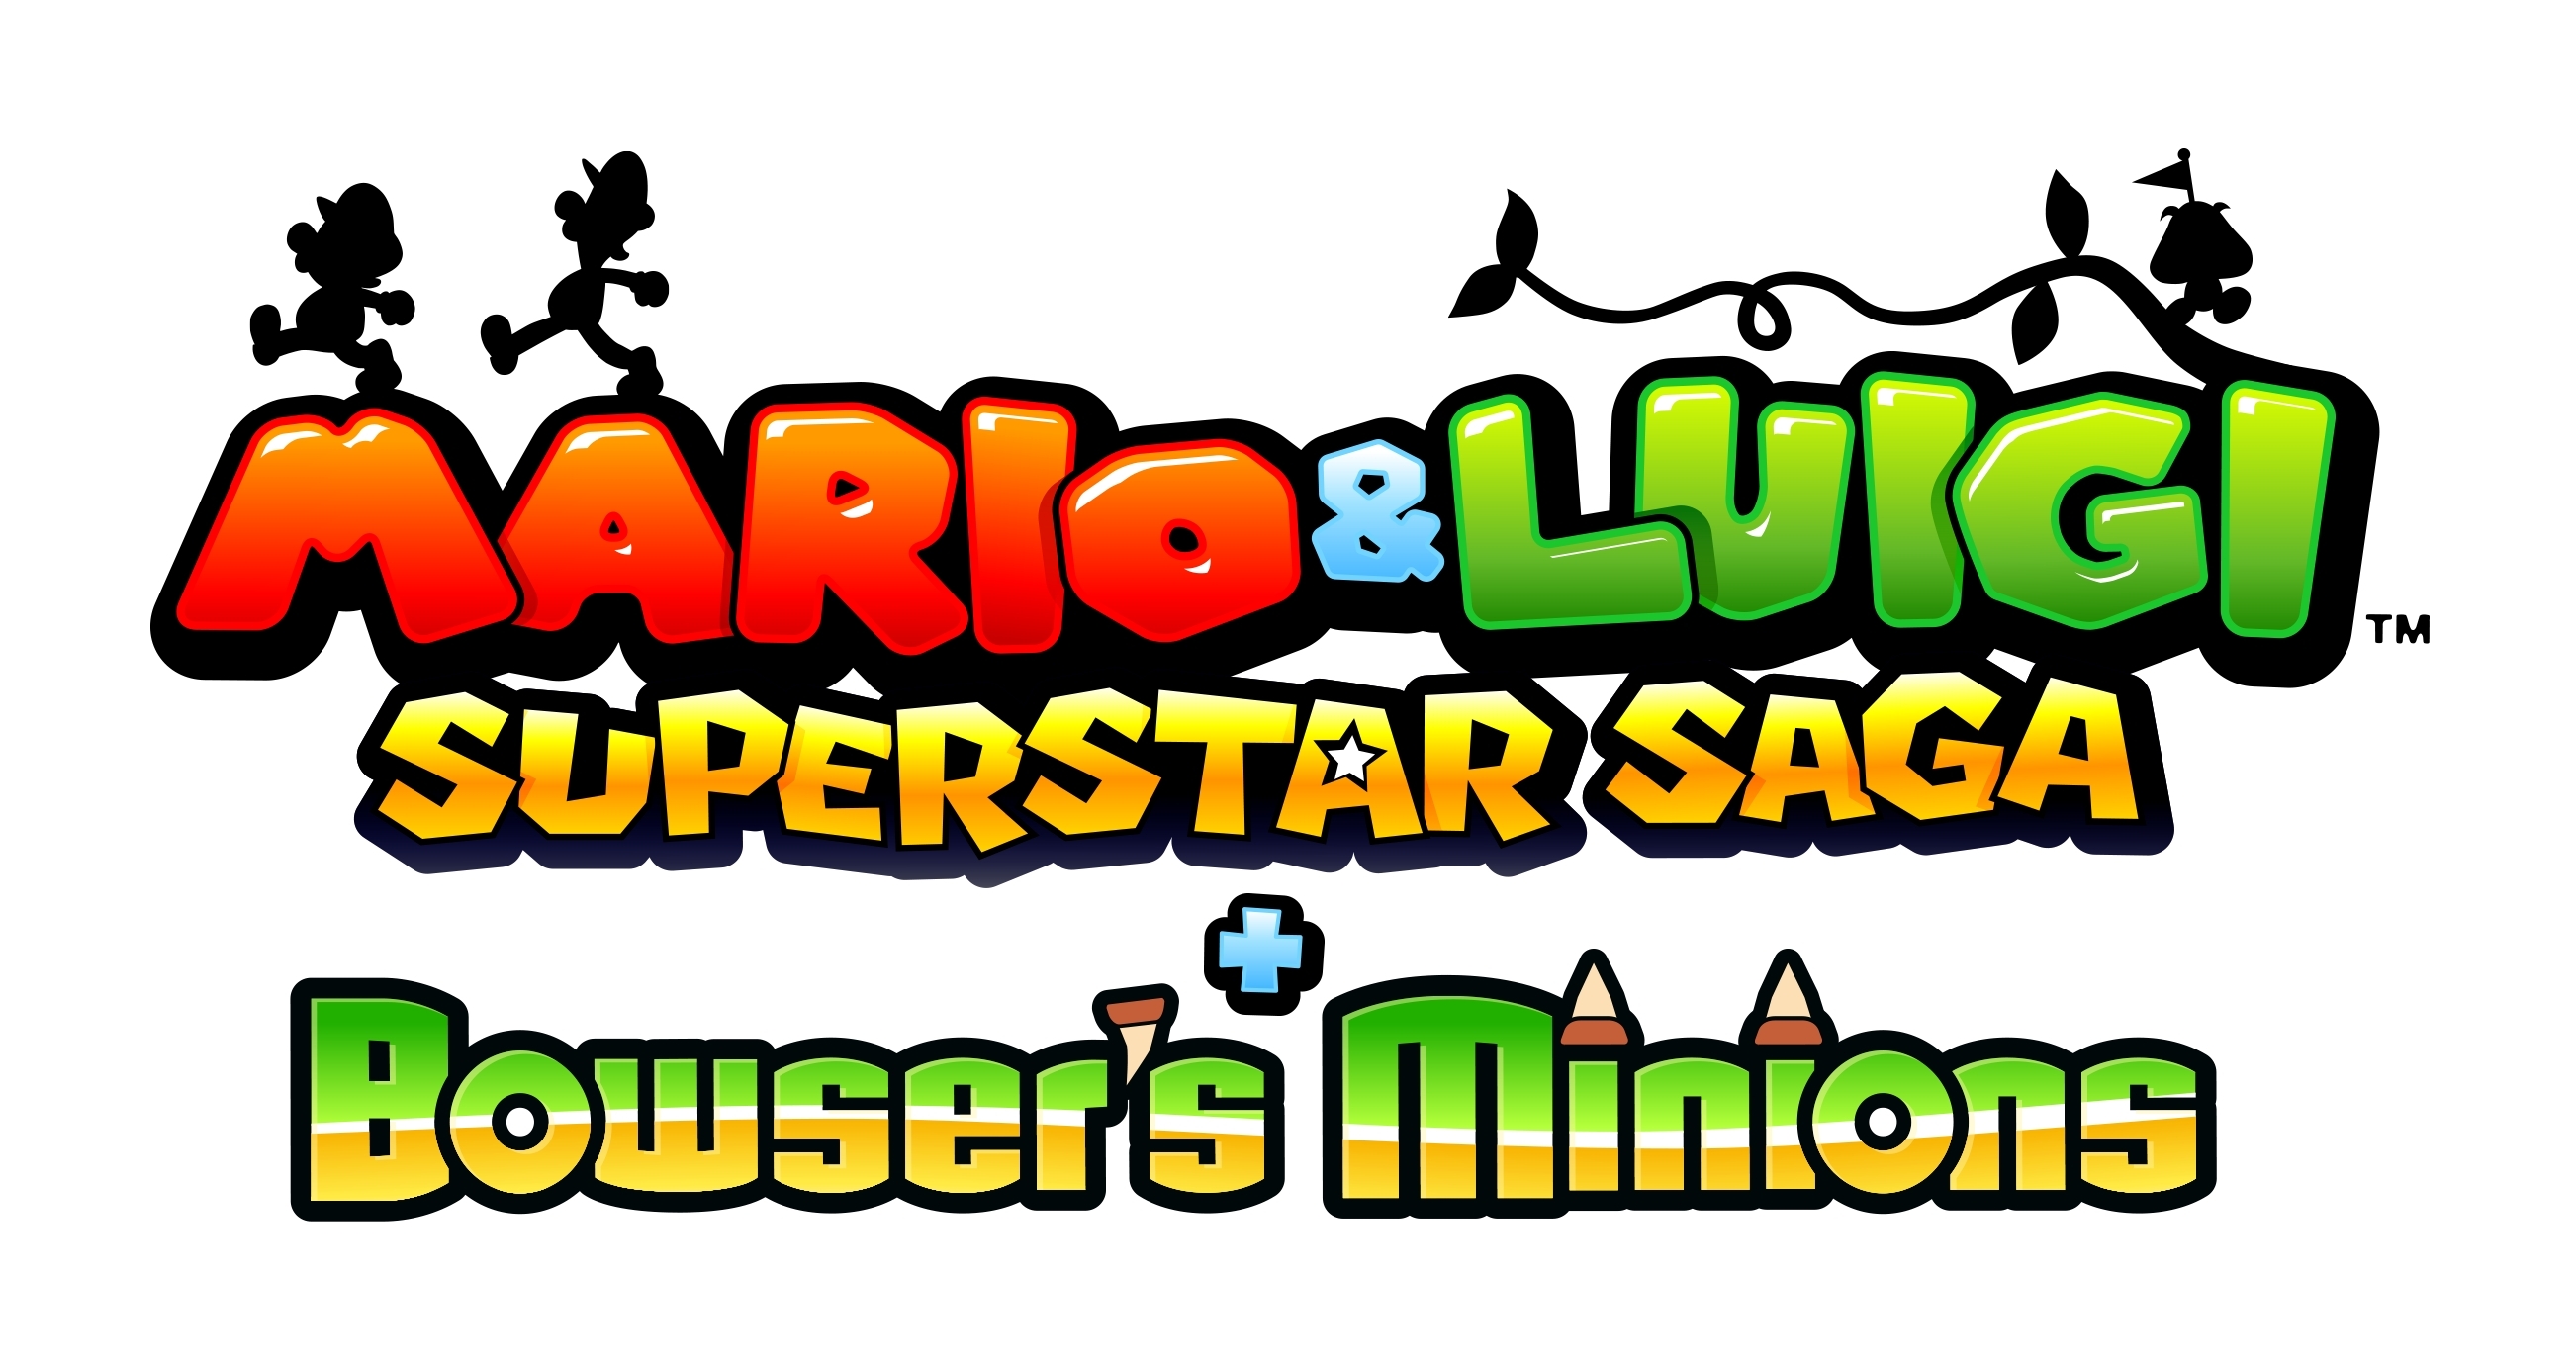 Mario & Luigi Superstar Saga logo